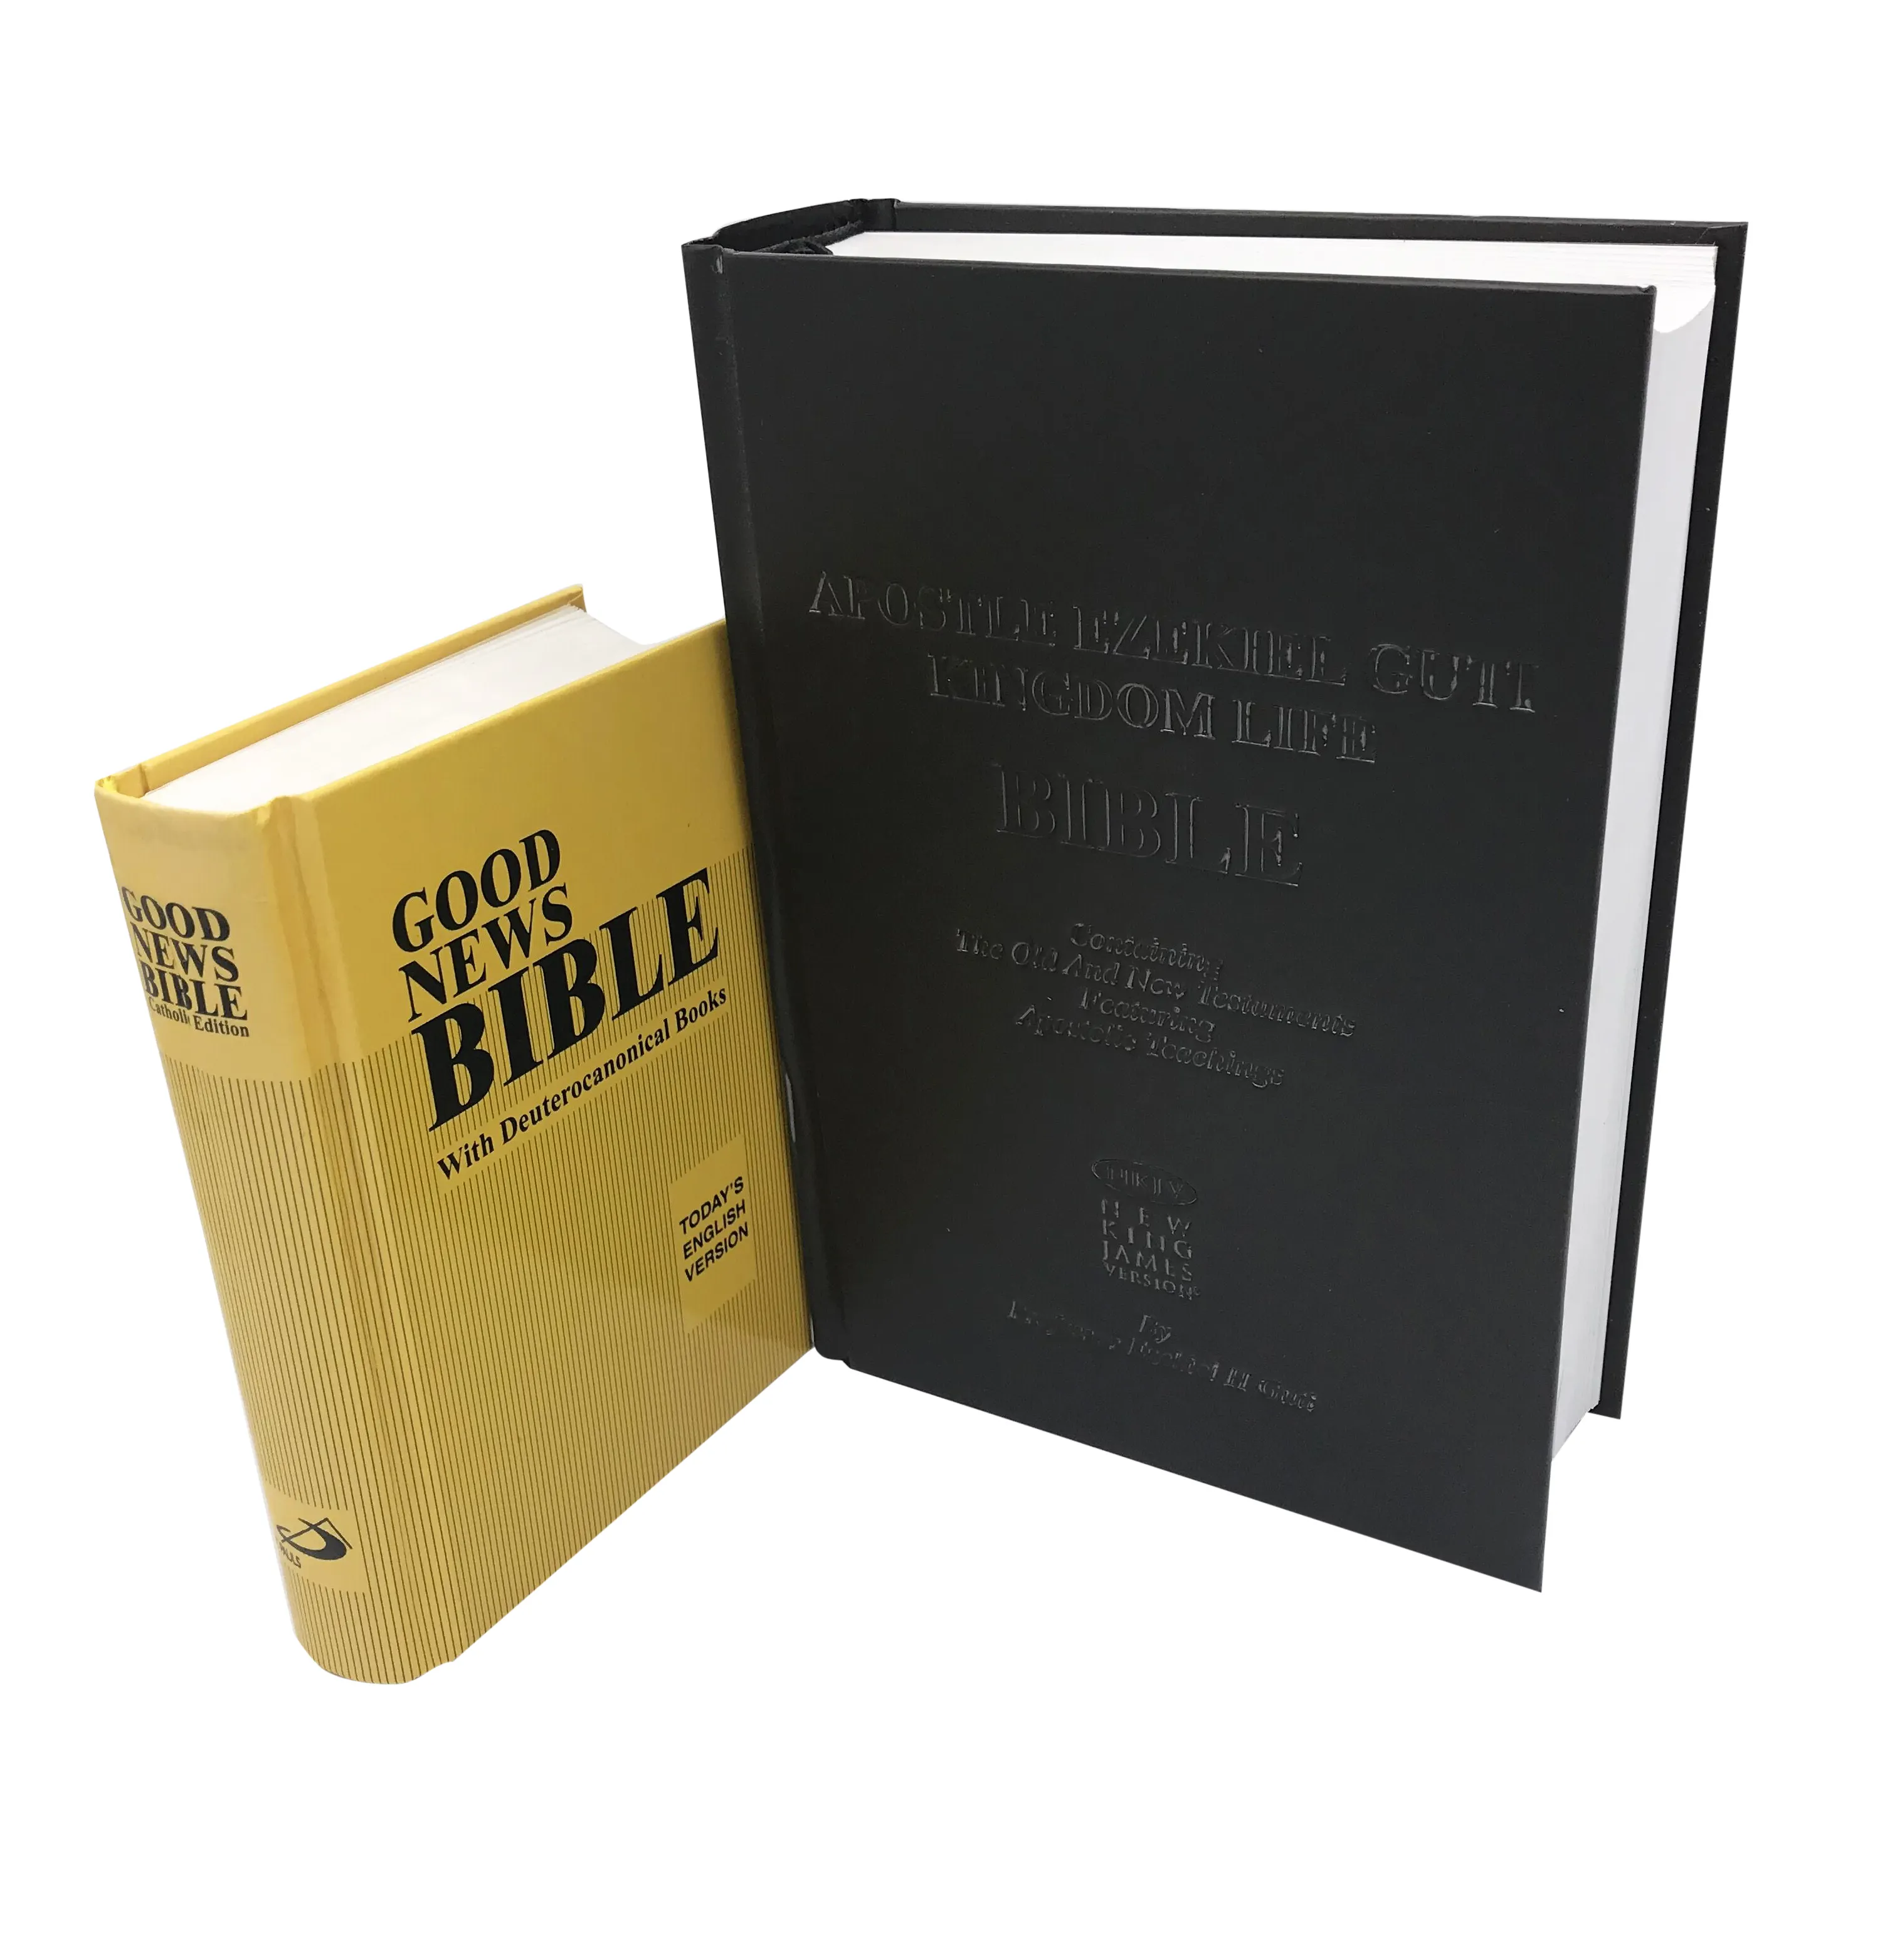 Grande fábrica de impressão de alta qualidade bíblia nvi, kjv bíblia, bíblia criança